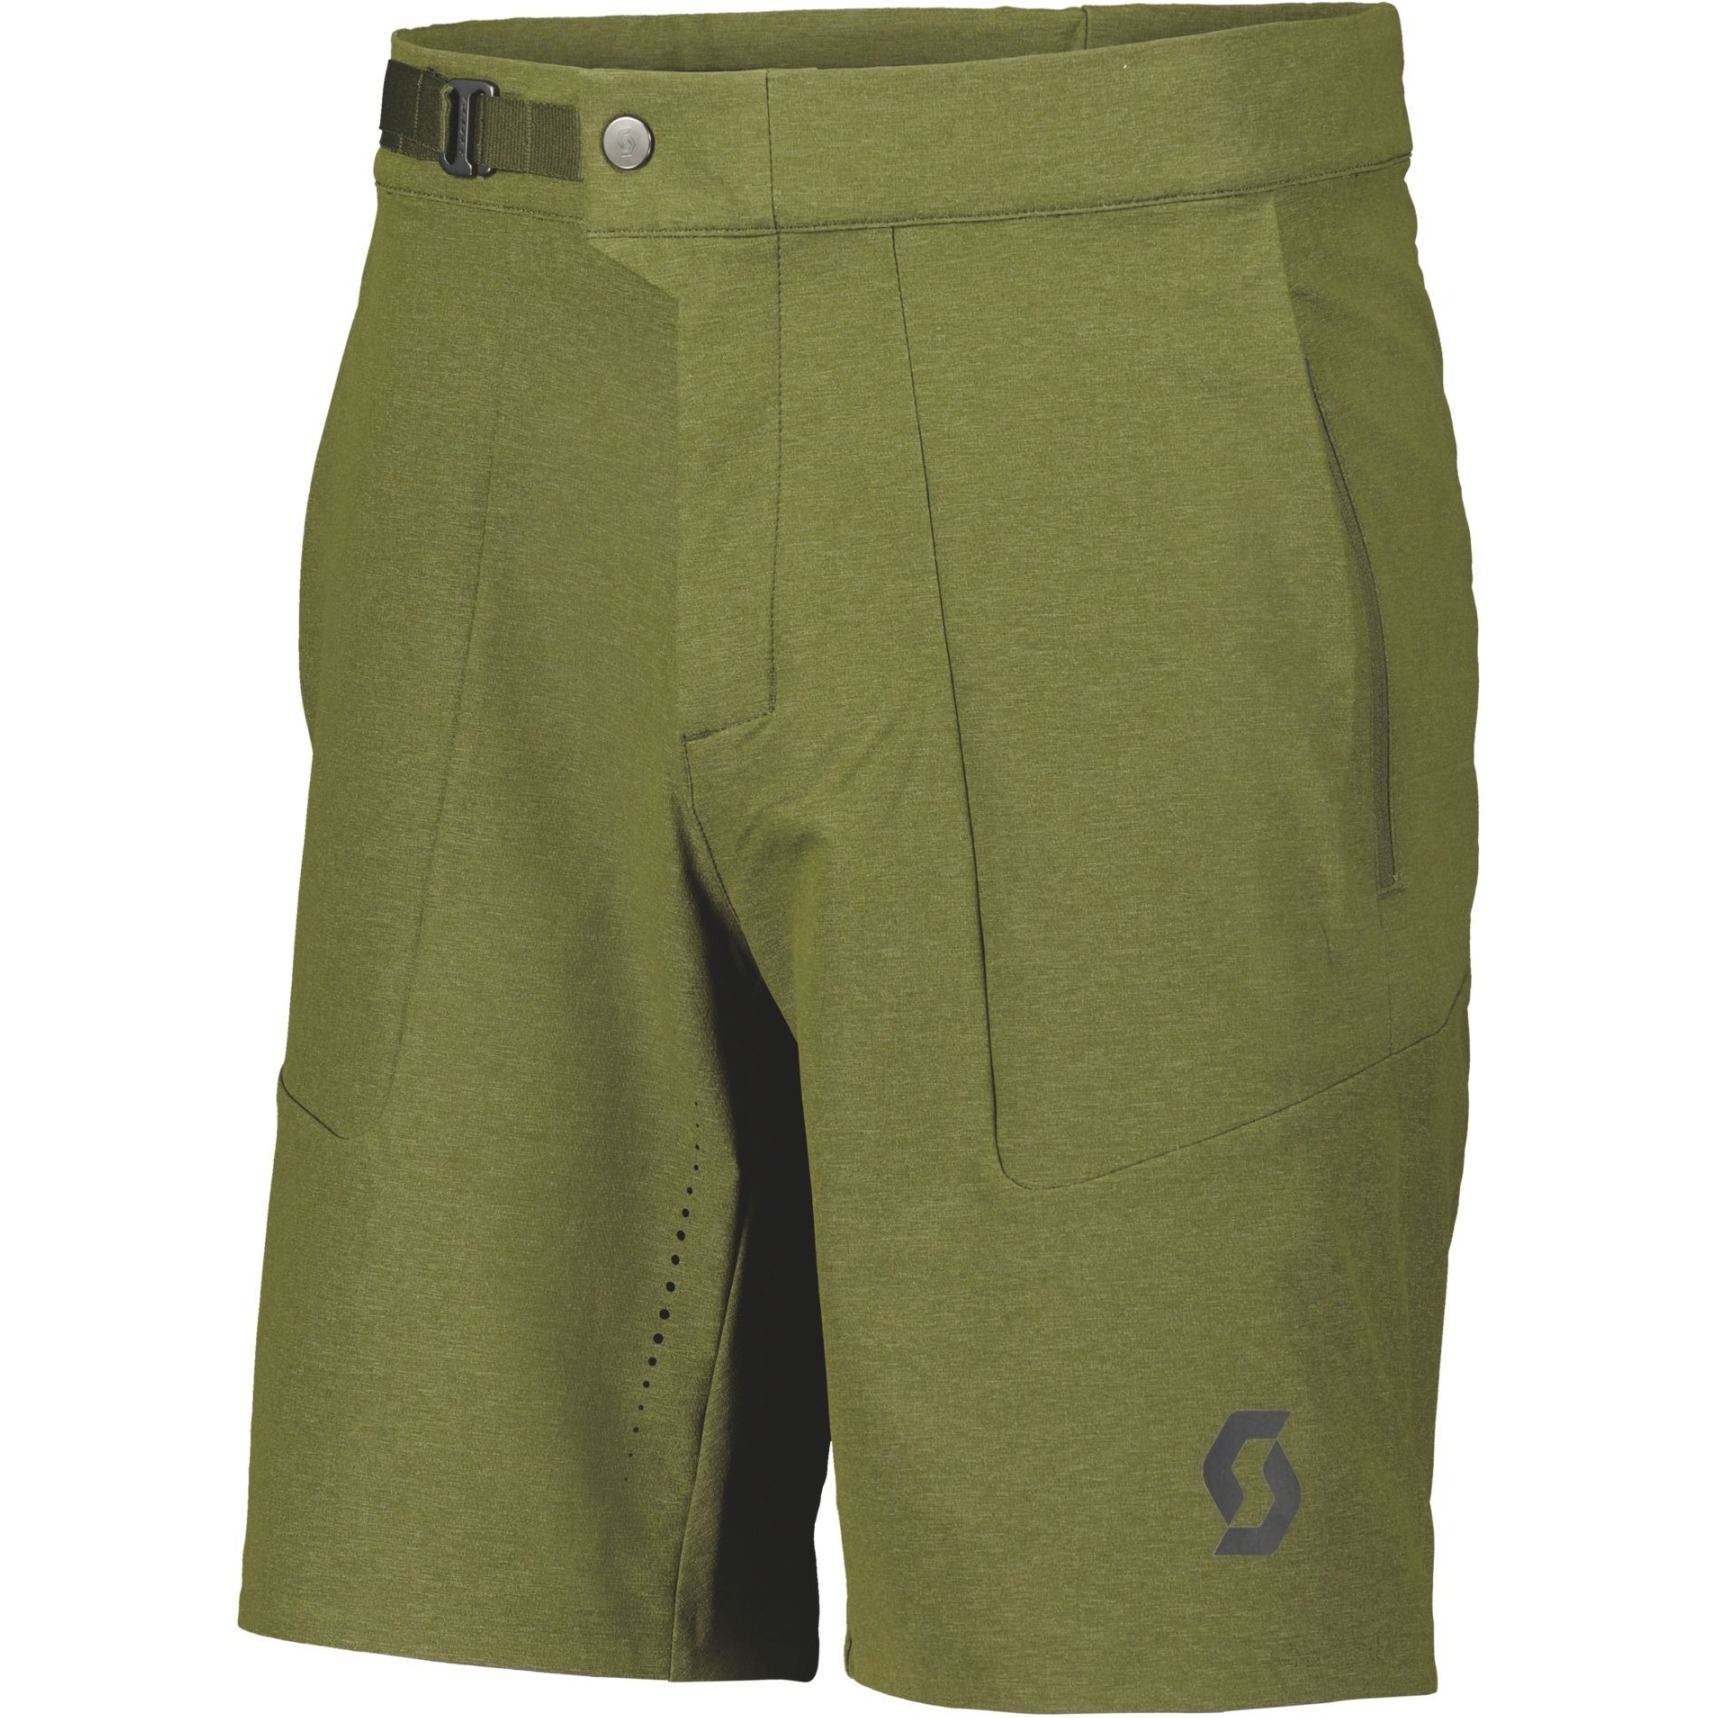 Produktbild von SCOTT Gravel Shorts Herren - fir green